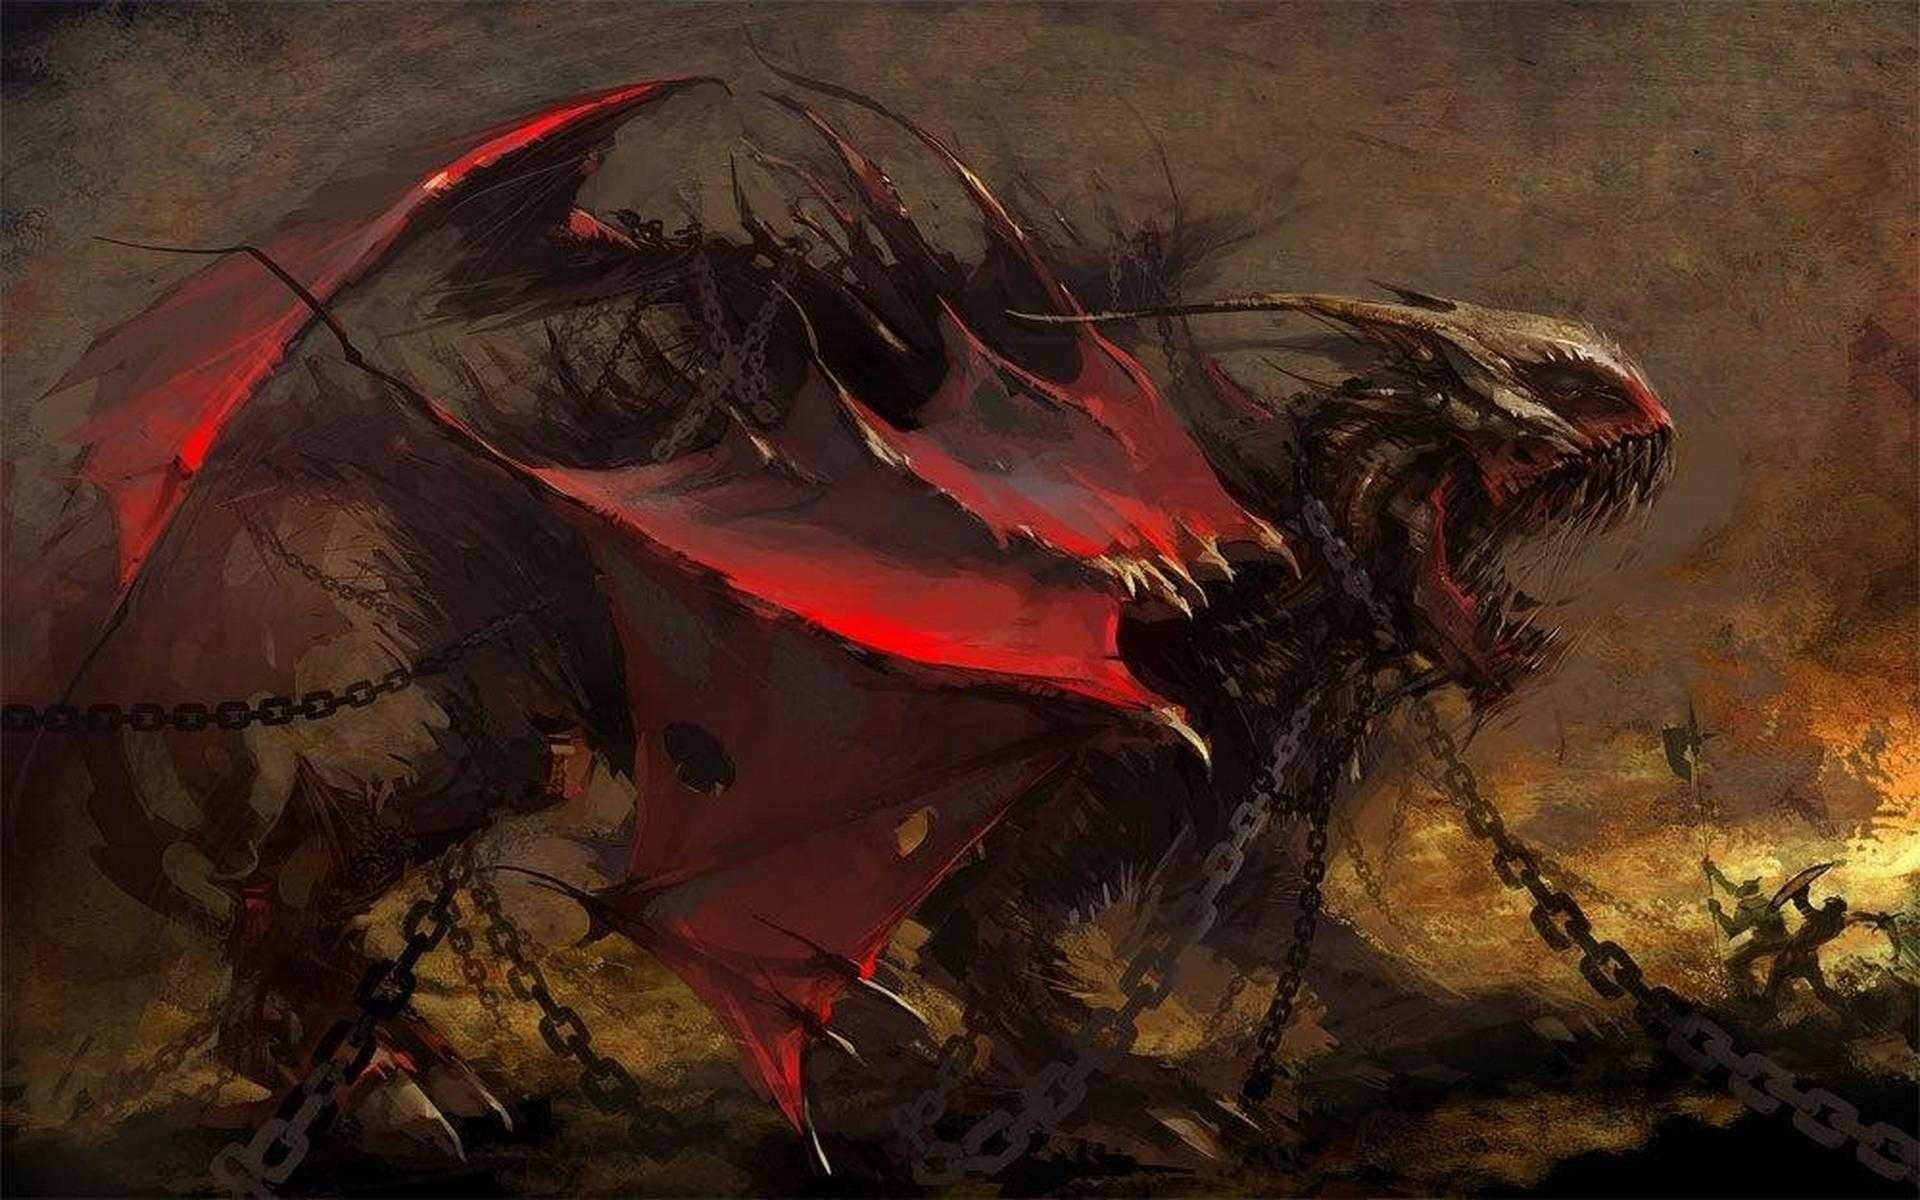 red and brown dragon digital art, fantasy art